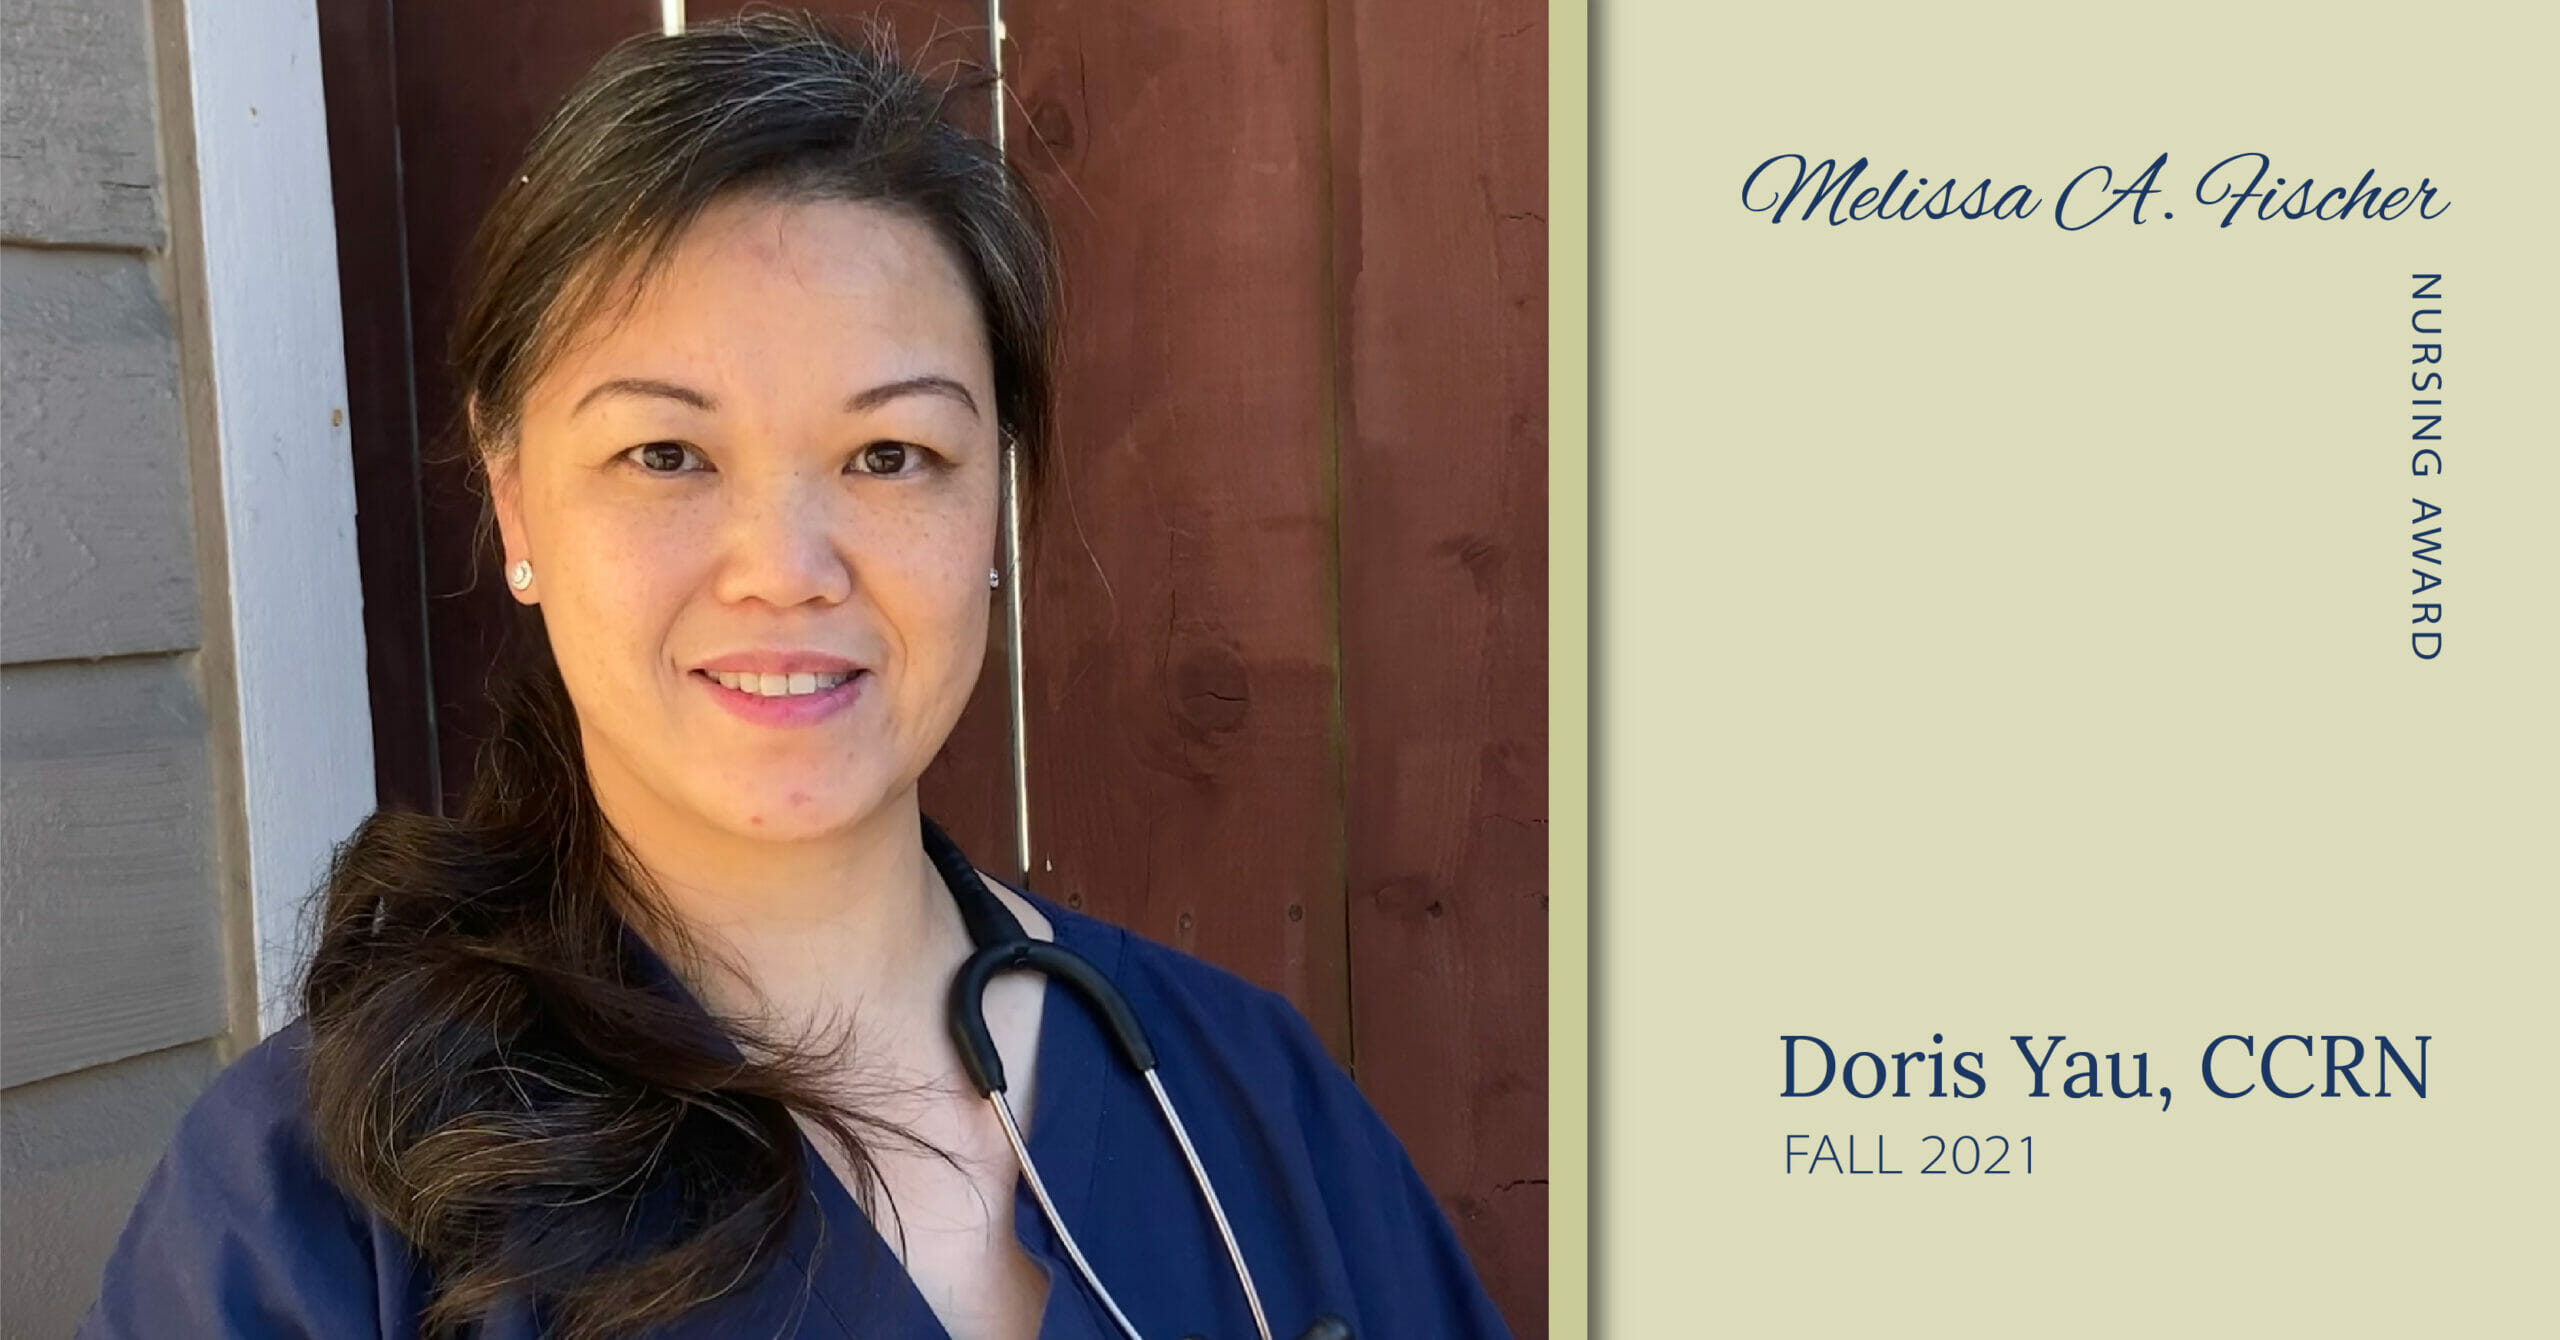 Doris Yau, CCRN Melissa A. Fischer Nursing Award Recipient Fall 2021